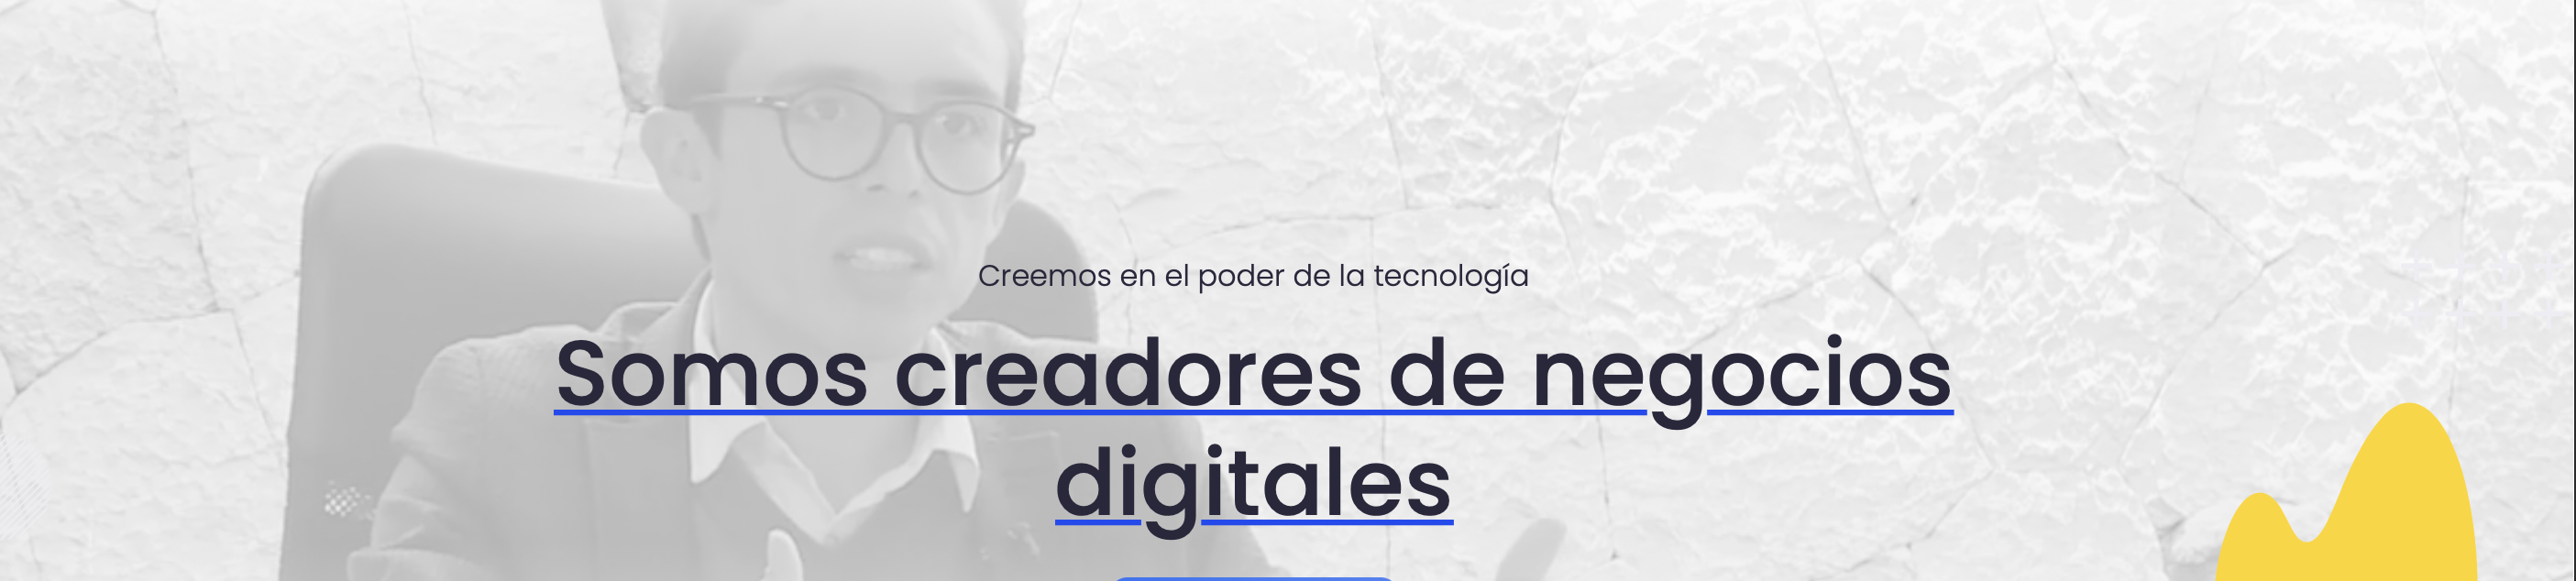 Nuvu, el proyecto tecnológico que no para de crecer, se integra como miembro de Colombia Fintech